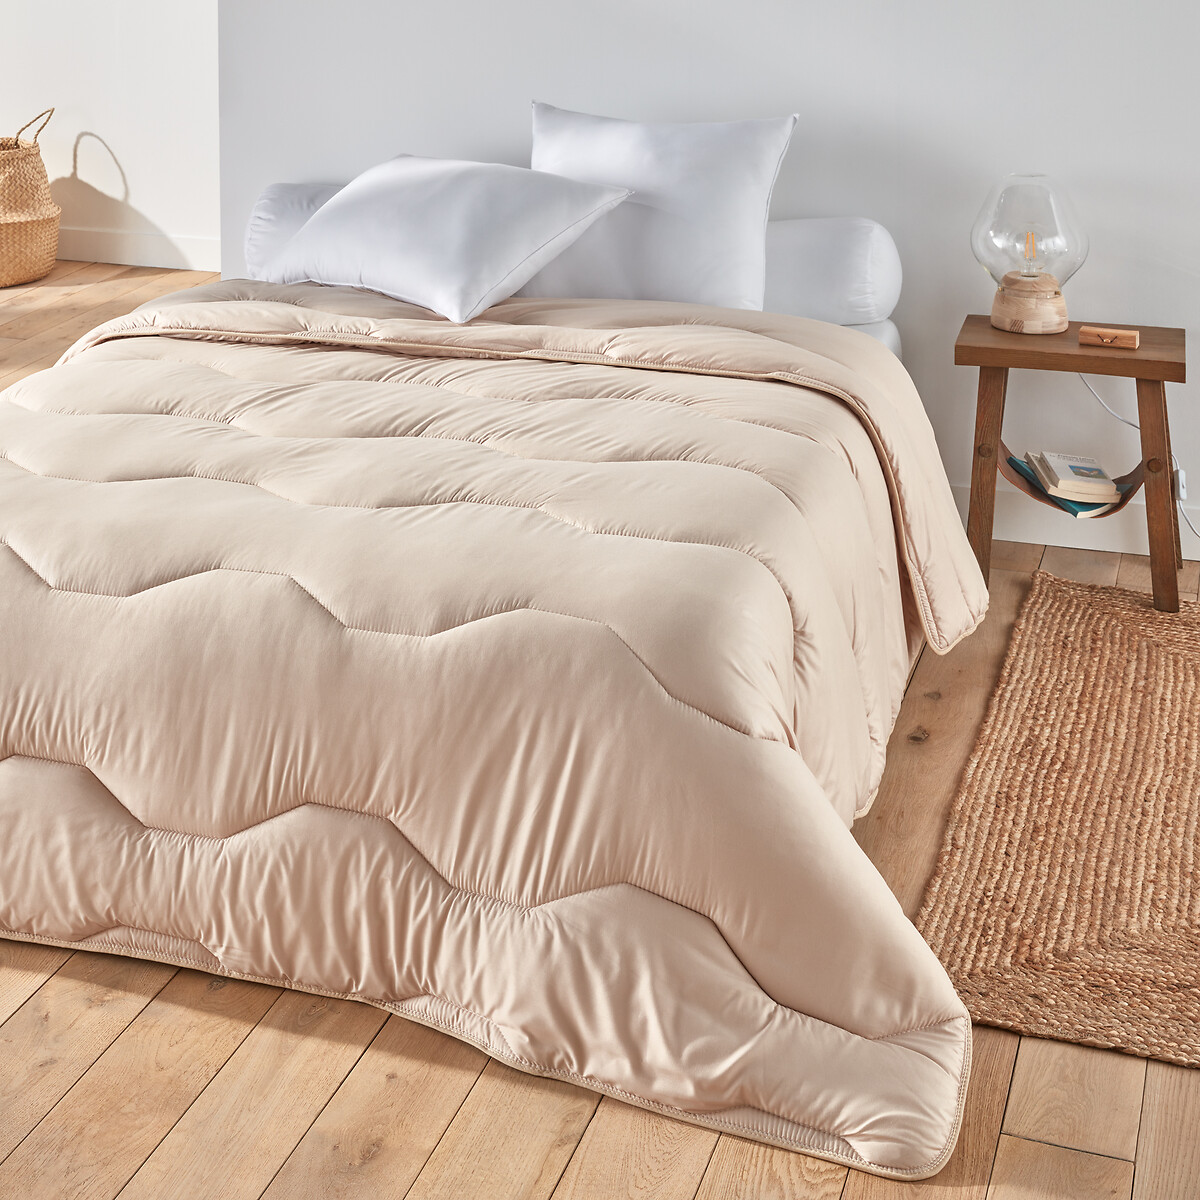 Одеяло La Redoute Из синтетики  гм 75 x 120 см бежевый, размер 75 x 120 см - фото 1